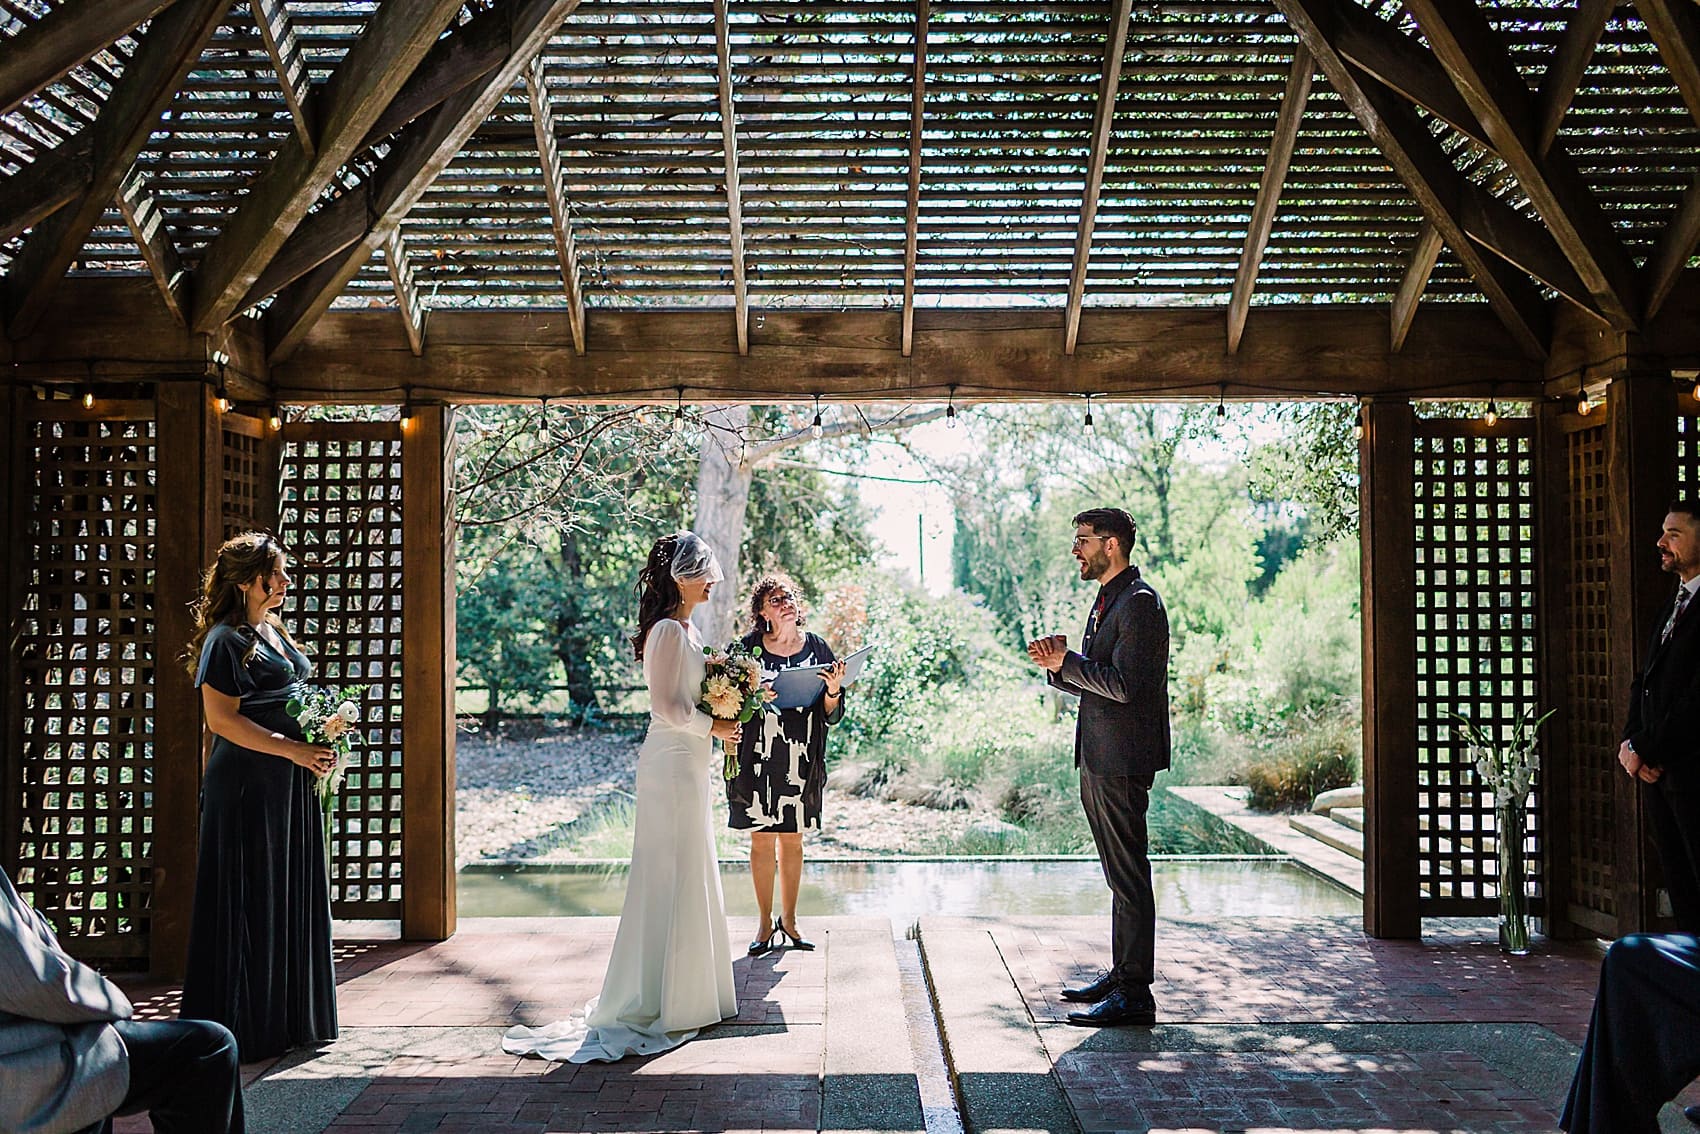 Groom's vows in botanical garden wedding in Claremont